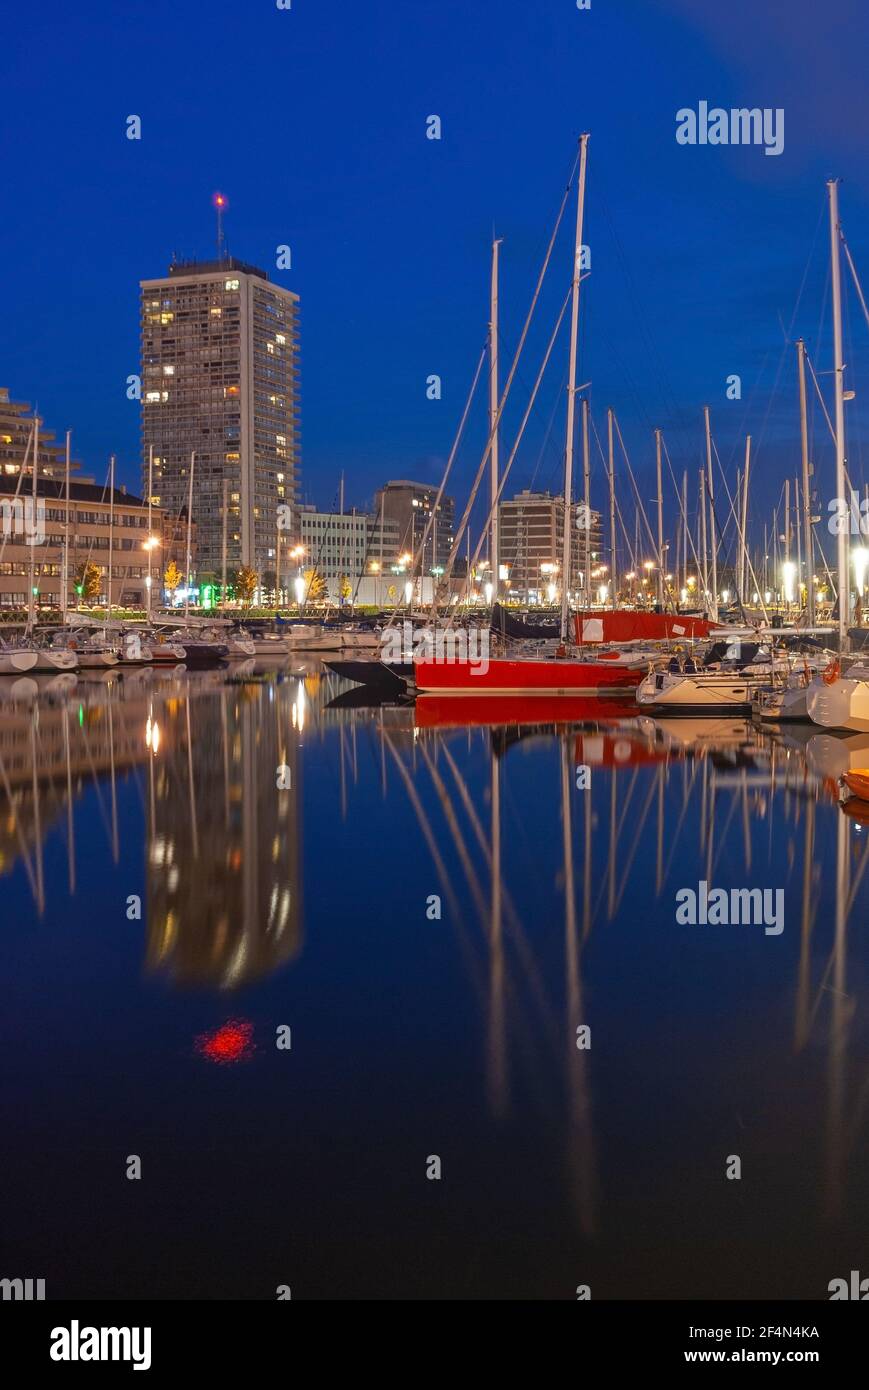 Oostende (Ostend) Yacht Marina Hafen bei Nacht in vertikalem Format, Belgien. Stockfoto